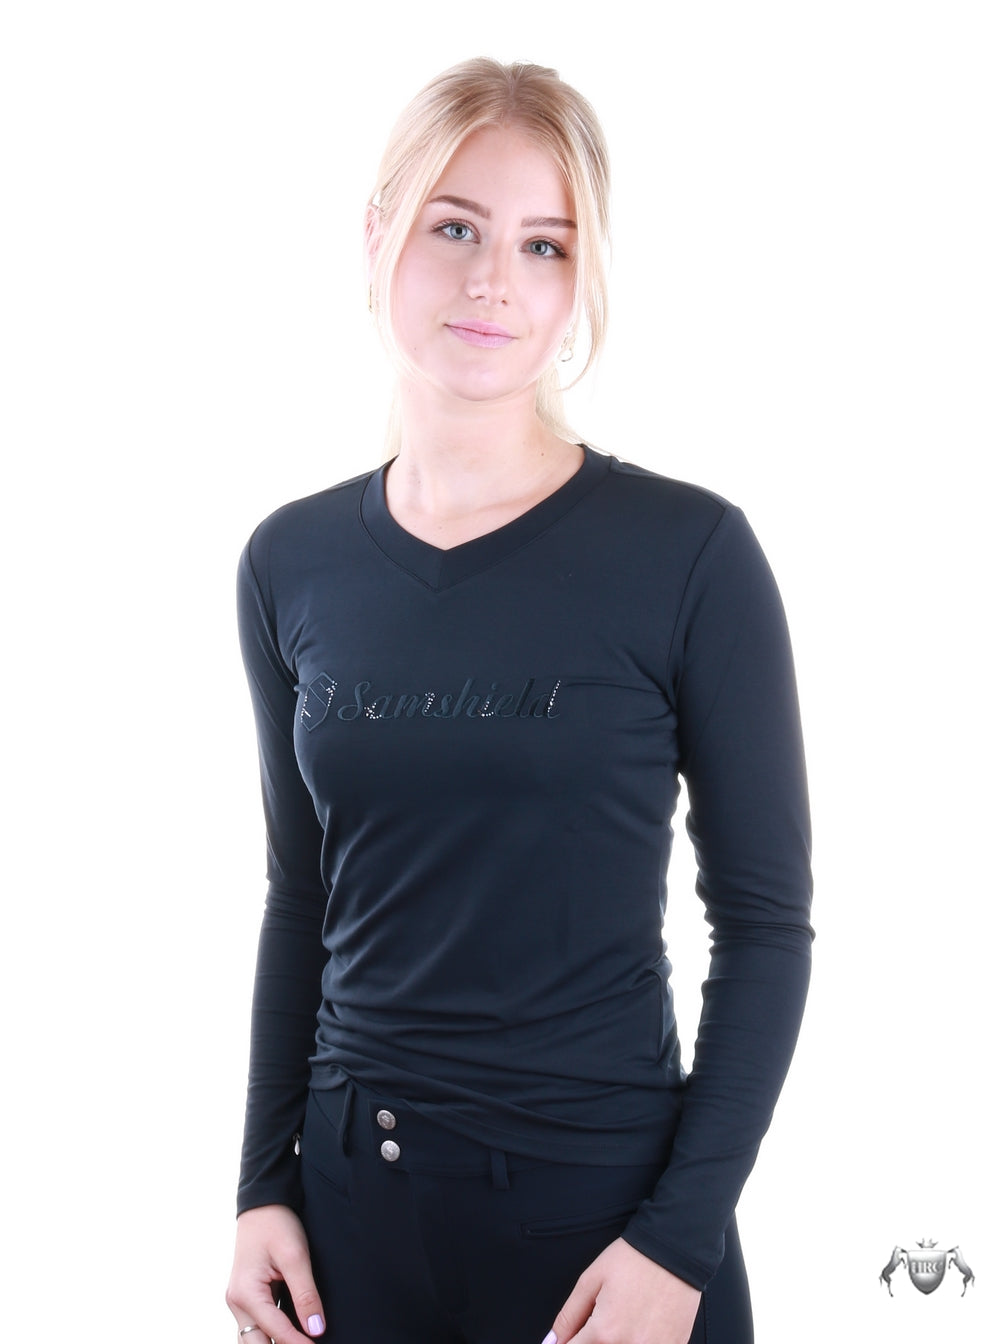 Samshield T-Shirt long sleeves ladies Axella crystal navy